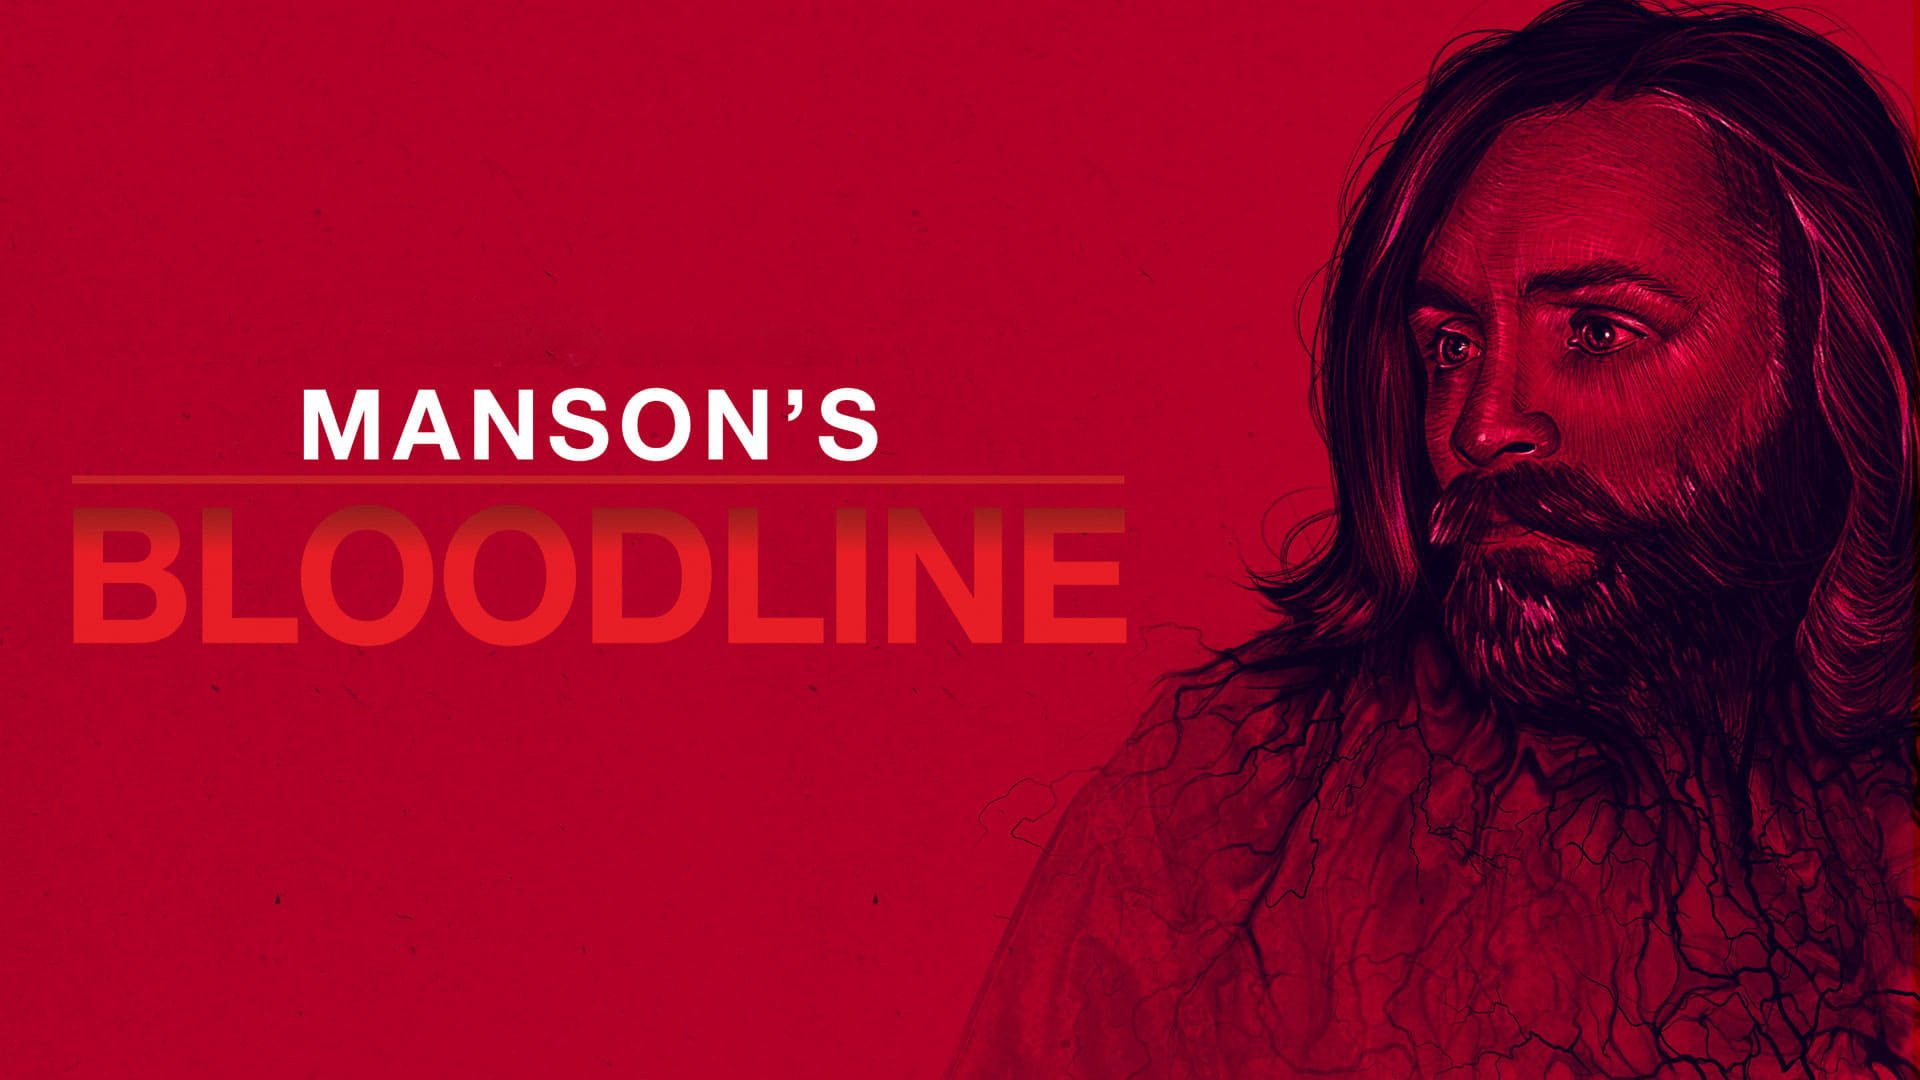 Show Manson's Bloodline